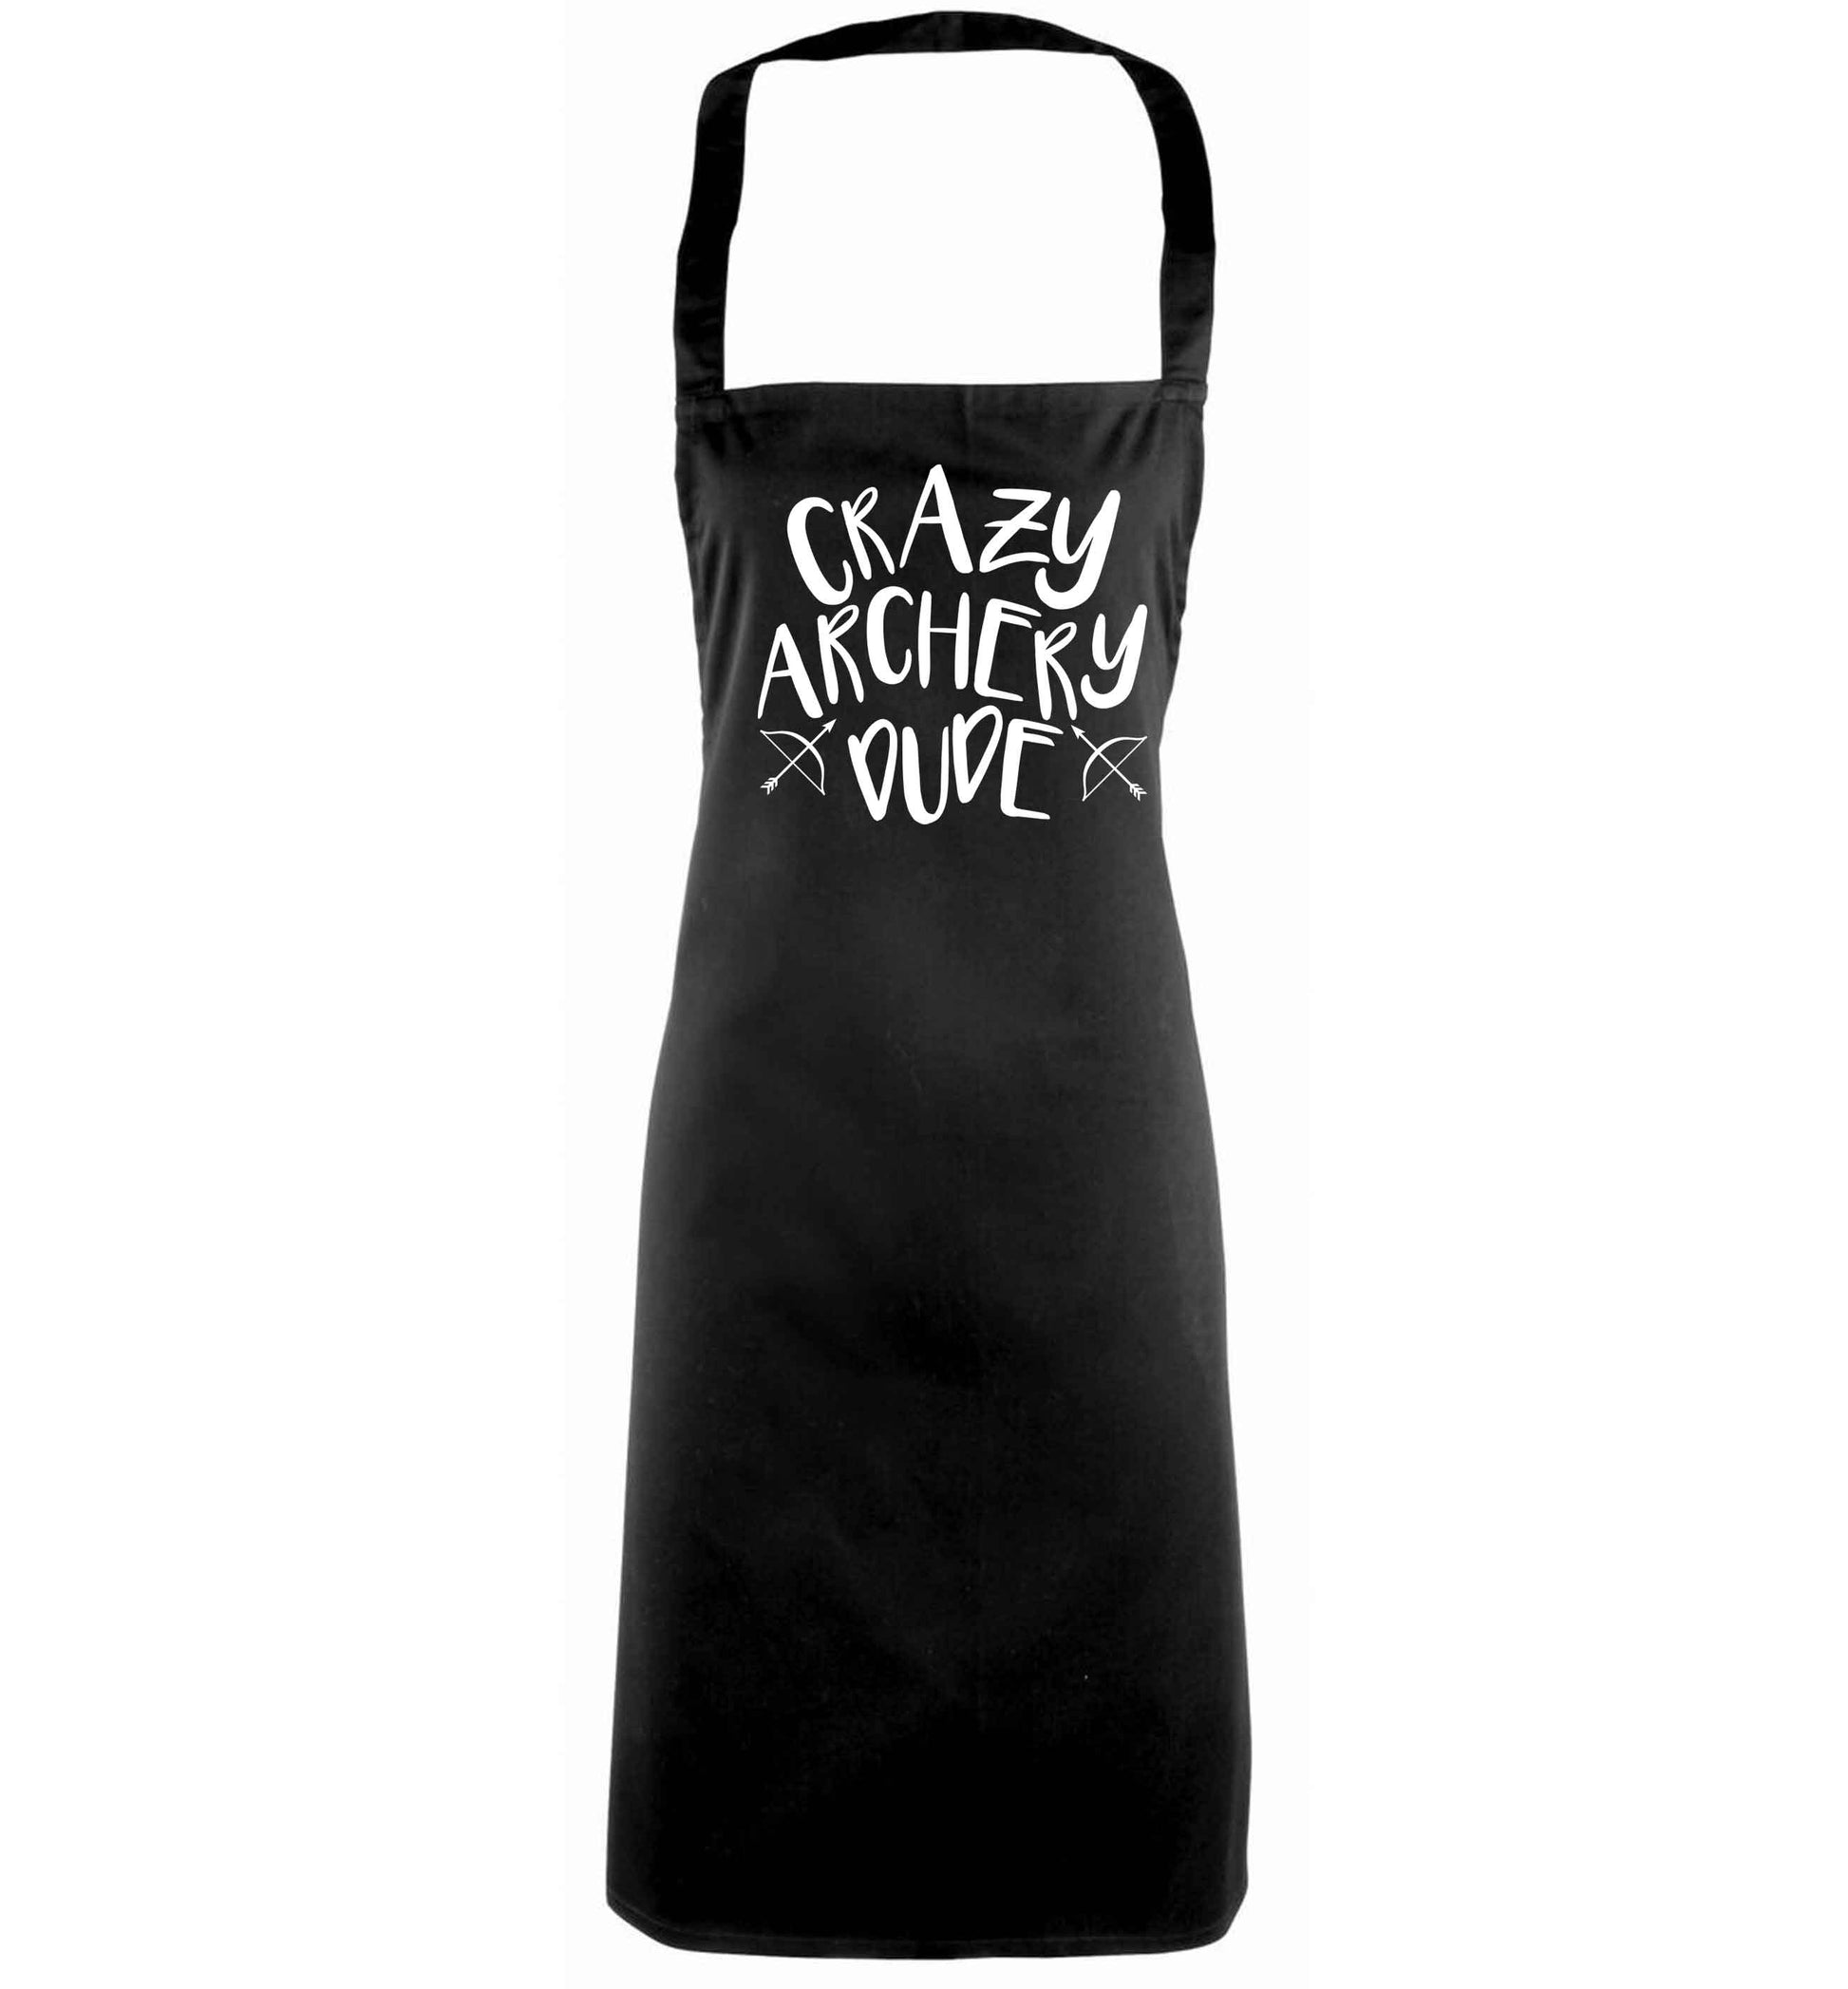 Crazy archery dude black apron